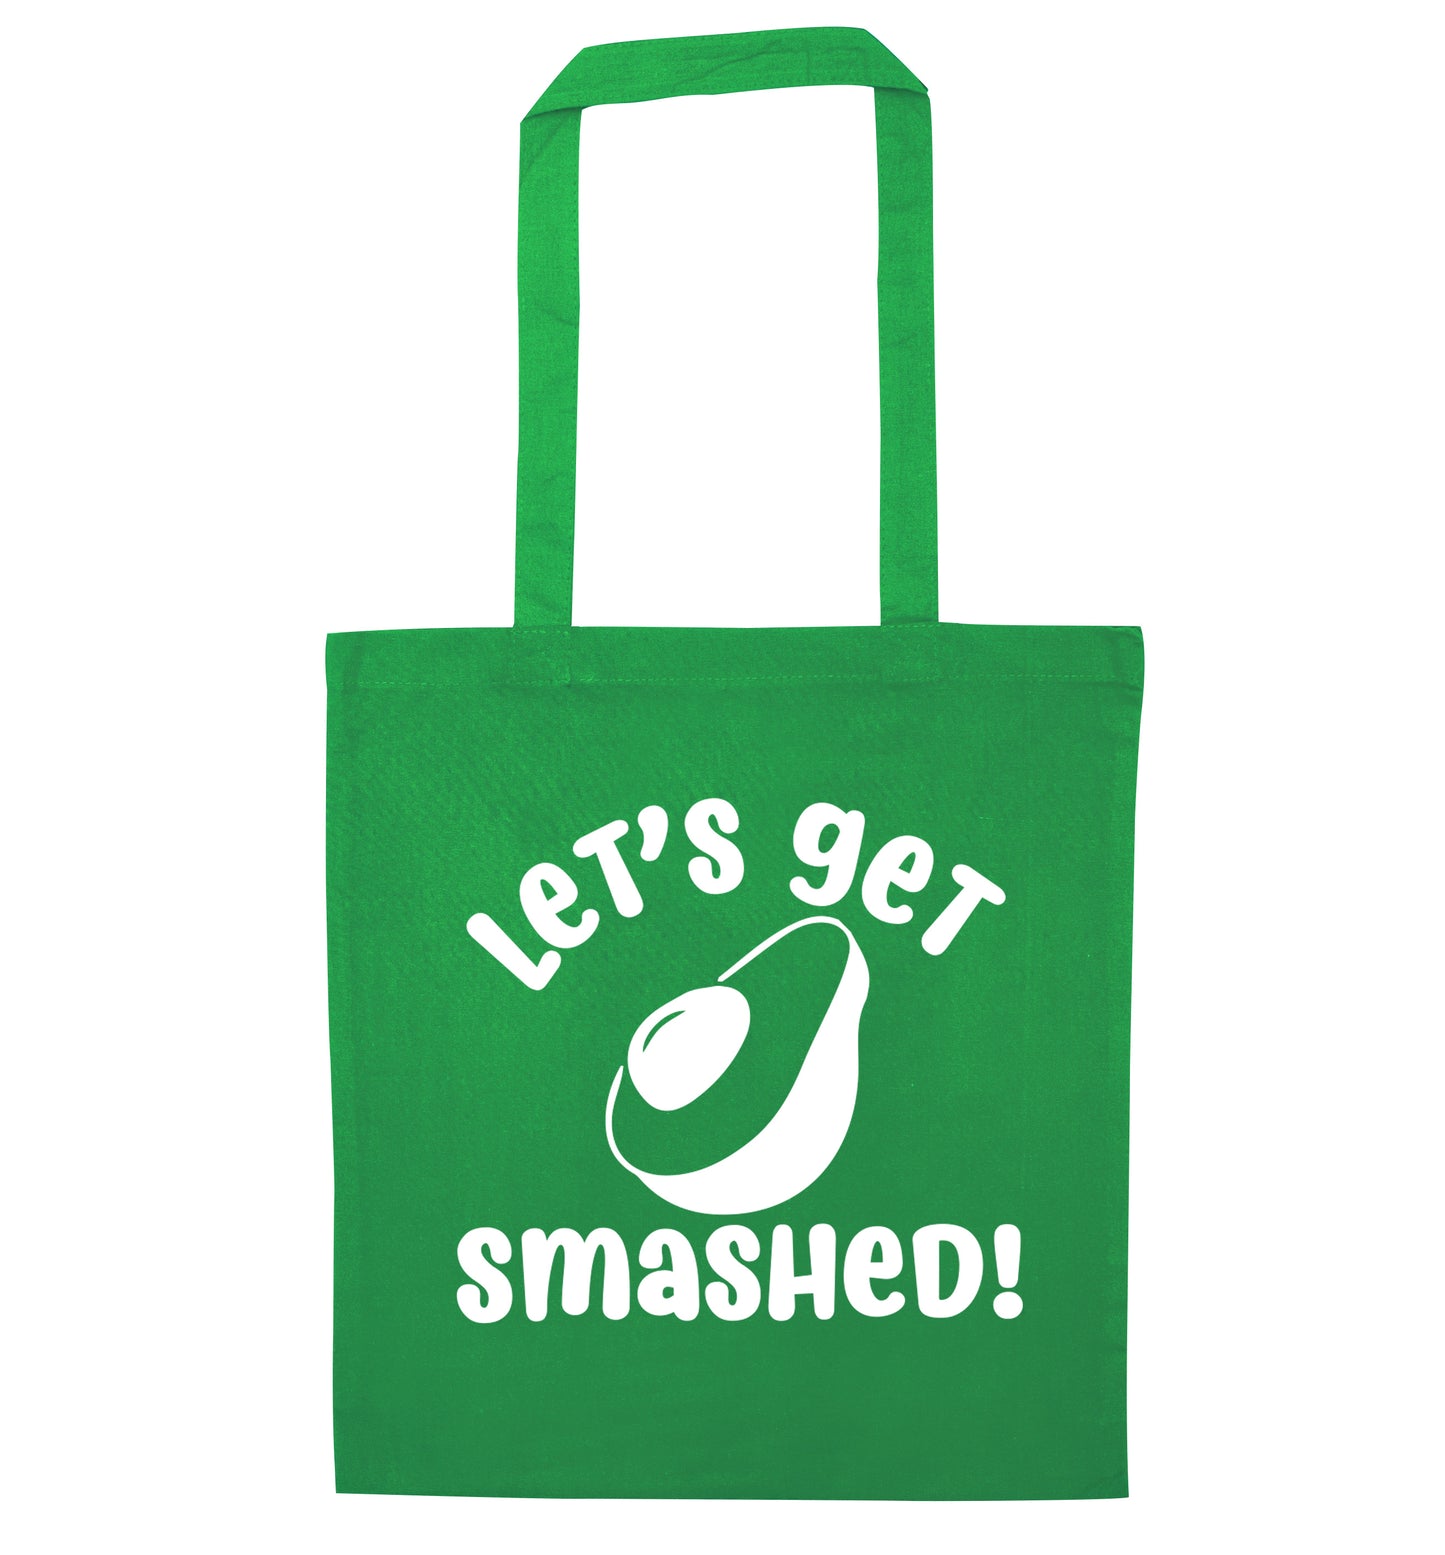 Let's get smashed green tote bag